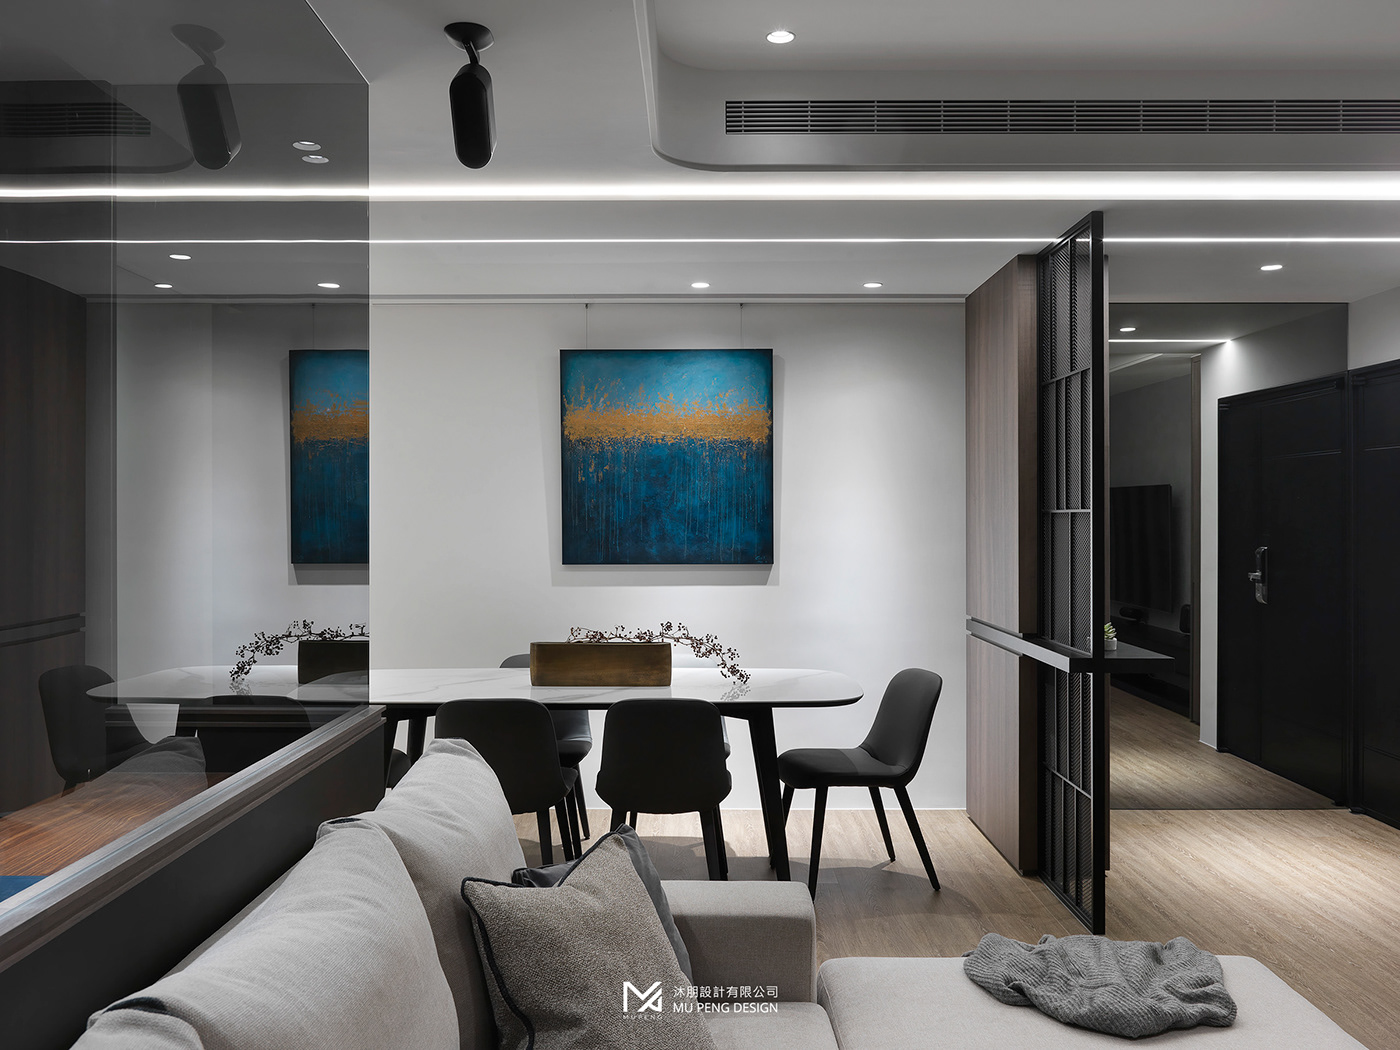 Interior 室內設計 家具 家居 材質 空間攝影 空間設計 設計 豪宅設計 黑白灰